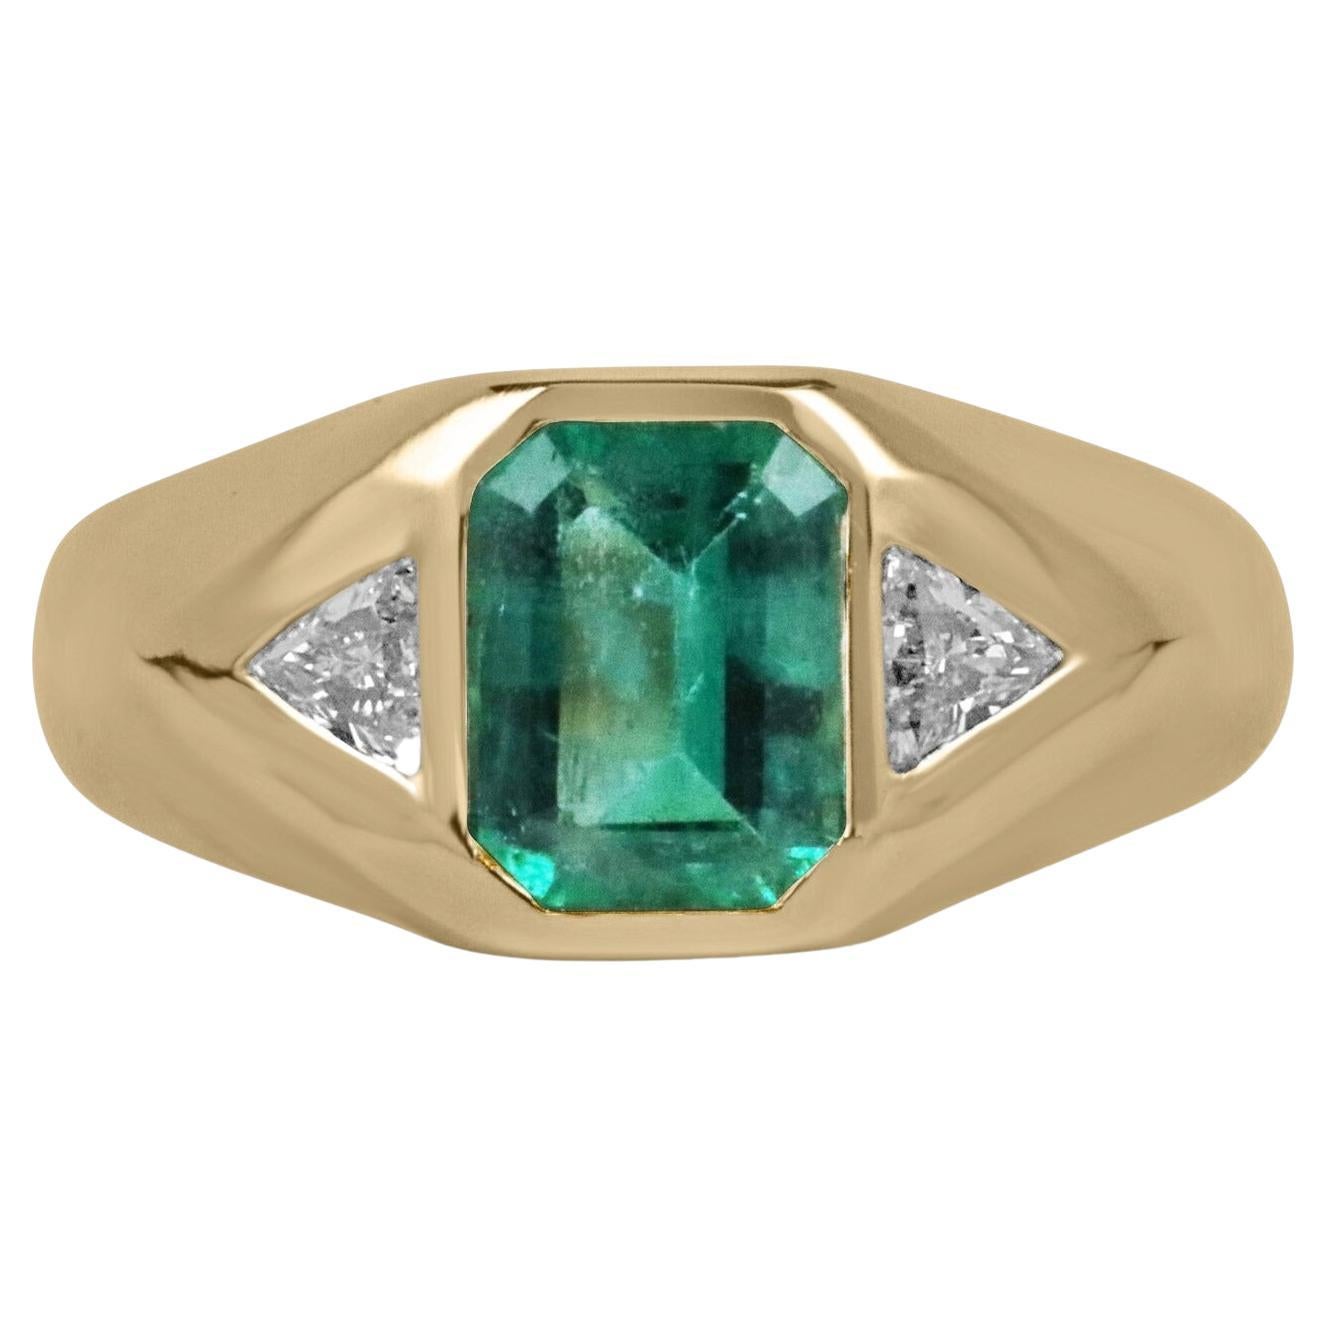 2.10tcw Unisex Deep Green Emerald & Trillion Cut Diamond Gypsy Signet Ring 14K